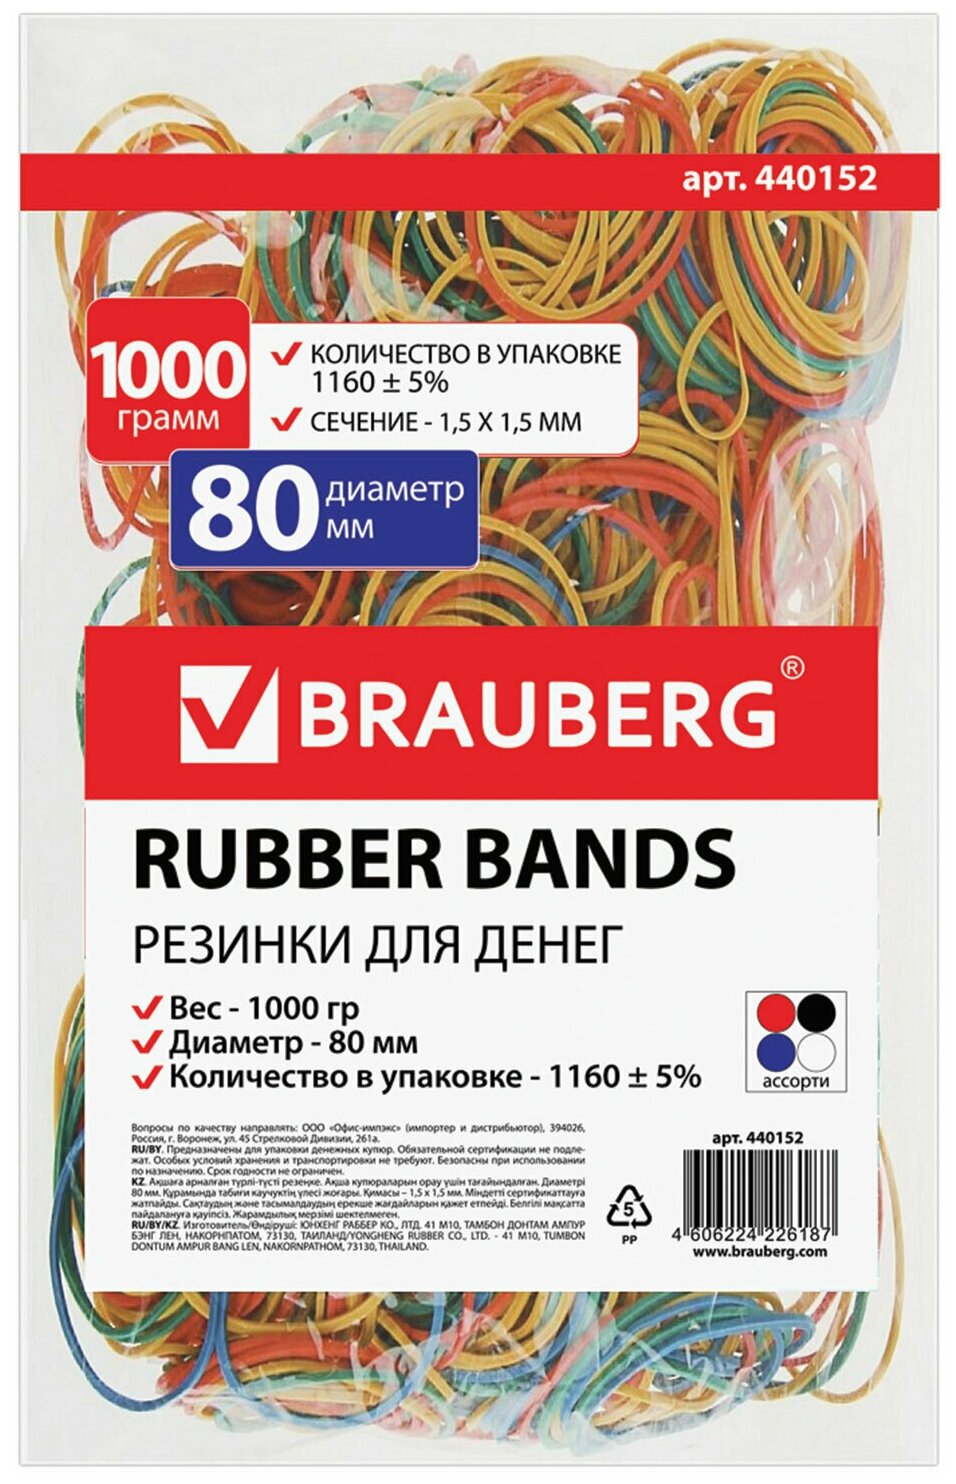 Резинки Brauberg, банковские, универсальные, диаметром 80 мм, 1000 г, цветные, натуральный каучук